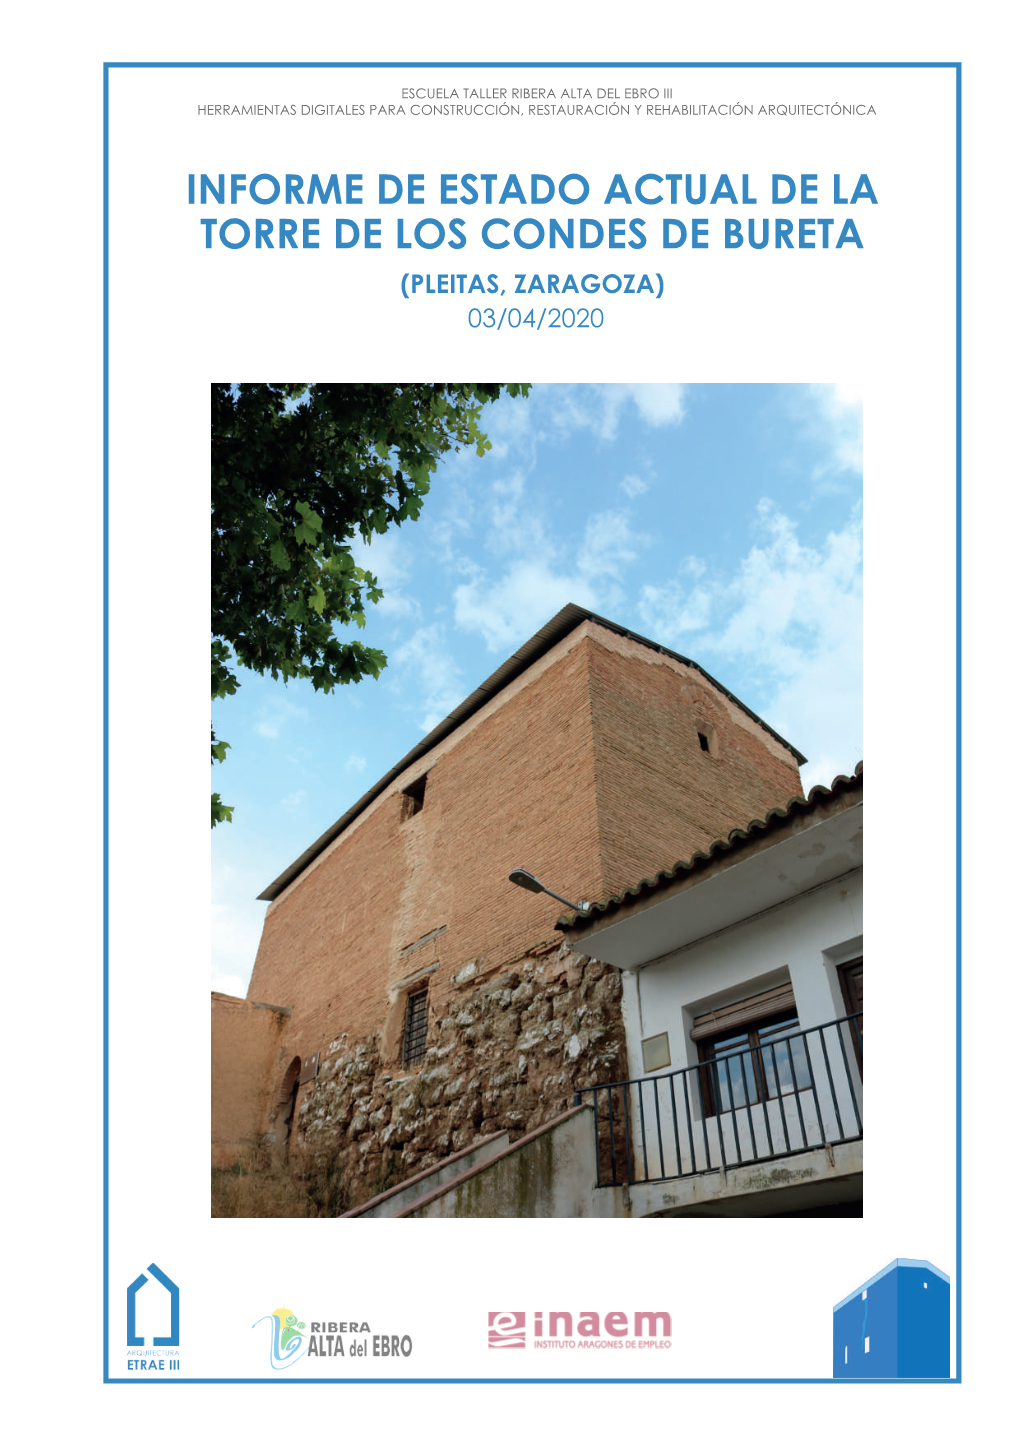 INFORME DE ESTADO ACTUAL DE LA TORRE DE LOS CONDES DE BURETA (PLEITAS, ZARAGOZA) 03/04/2020 Atribución-Nocomercial-Compartirigual 4.0 Internacional (CC BY-NC-SA 4.0)